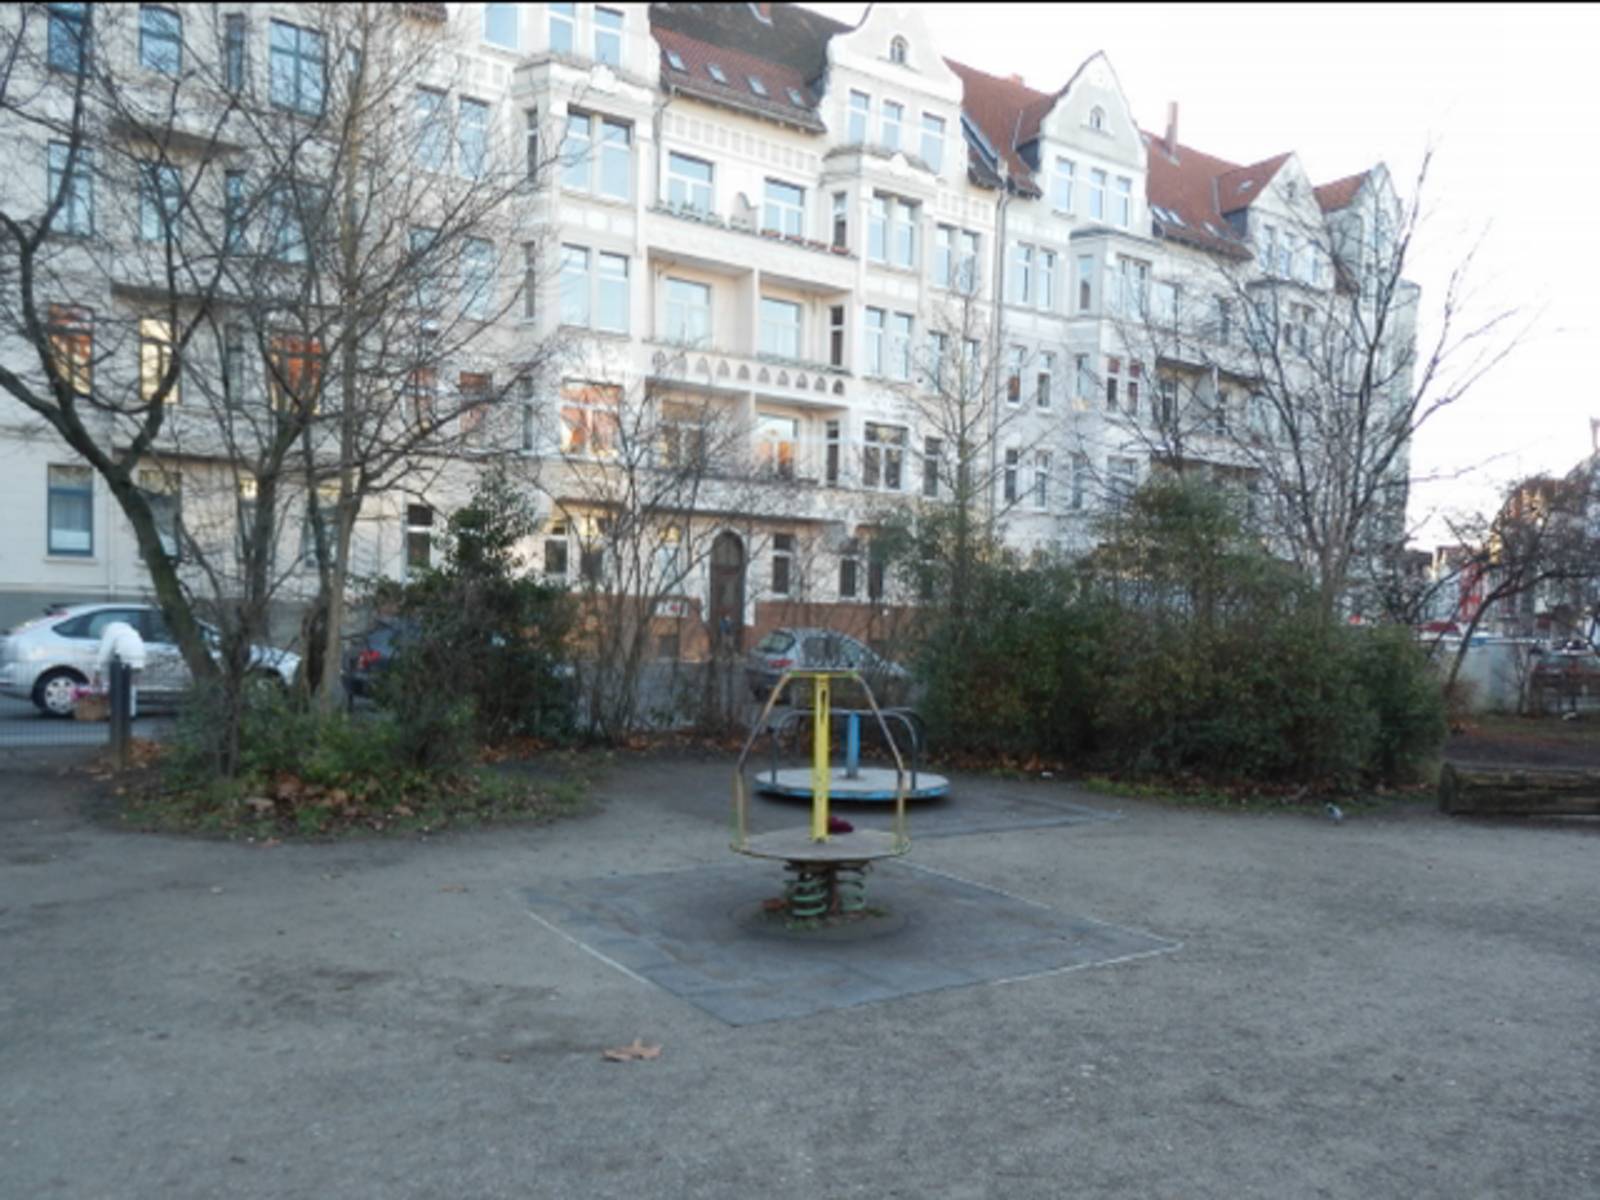 Spielplatz am Moltkeplatz mit Altbauhaeuserfront